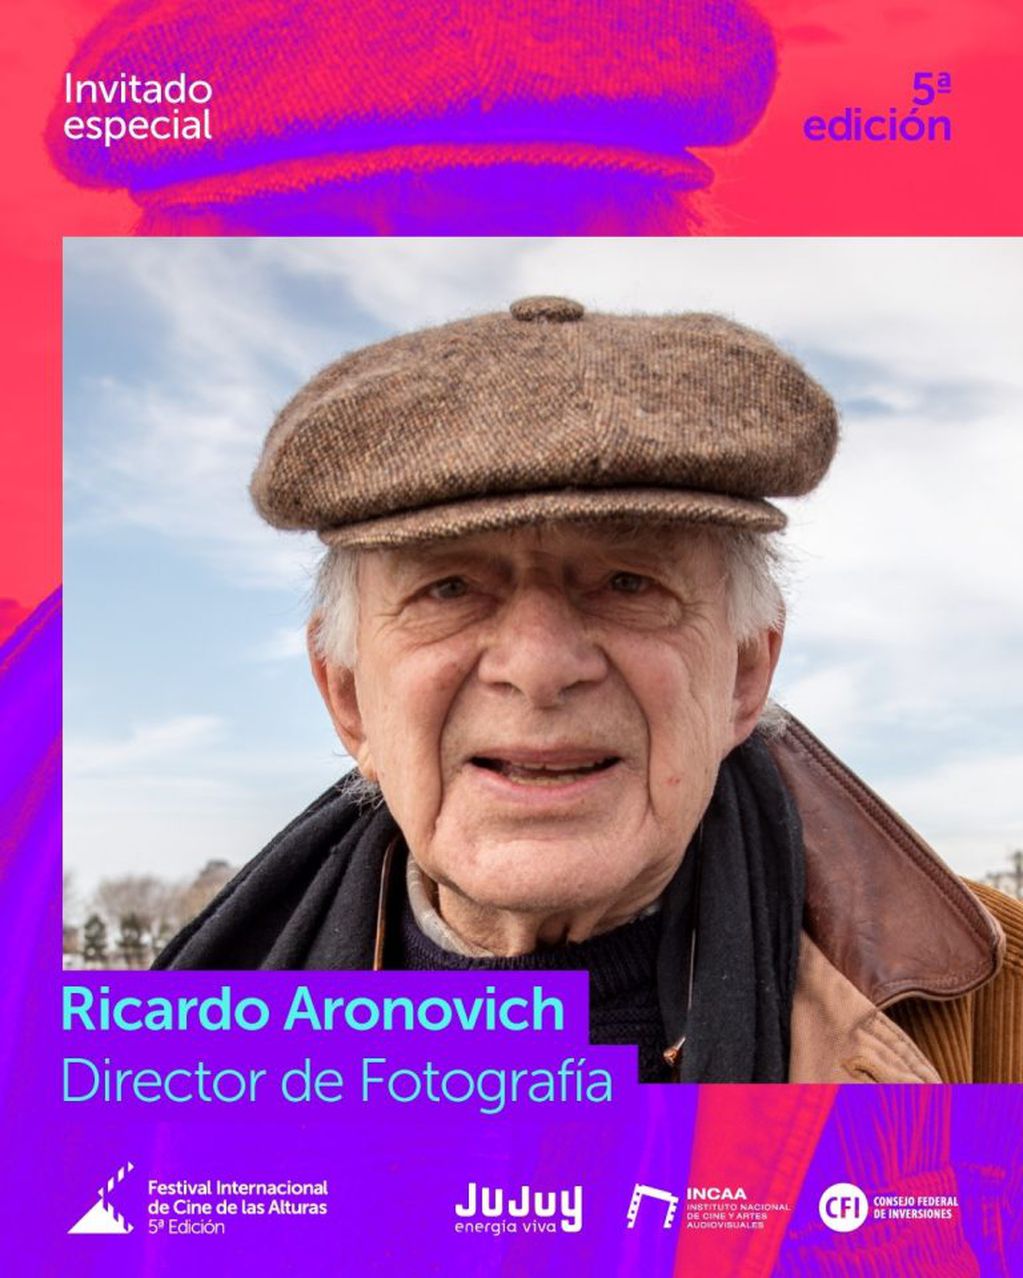 Ricardo Aronovich es uno de los invitados especiales del Festival Internacional de Cine de las Alturas que se desarrollará del 7 al 14 de este mes en Jujuy.